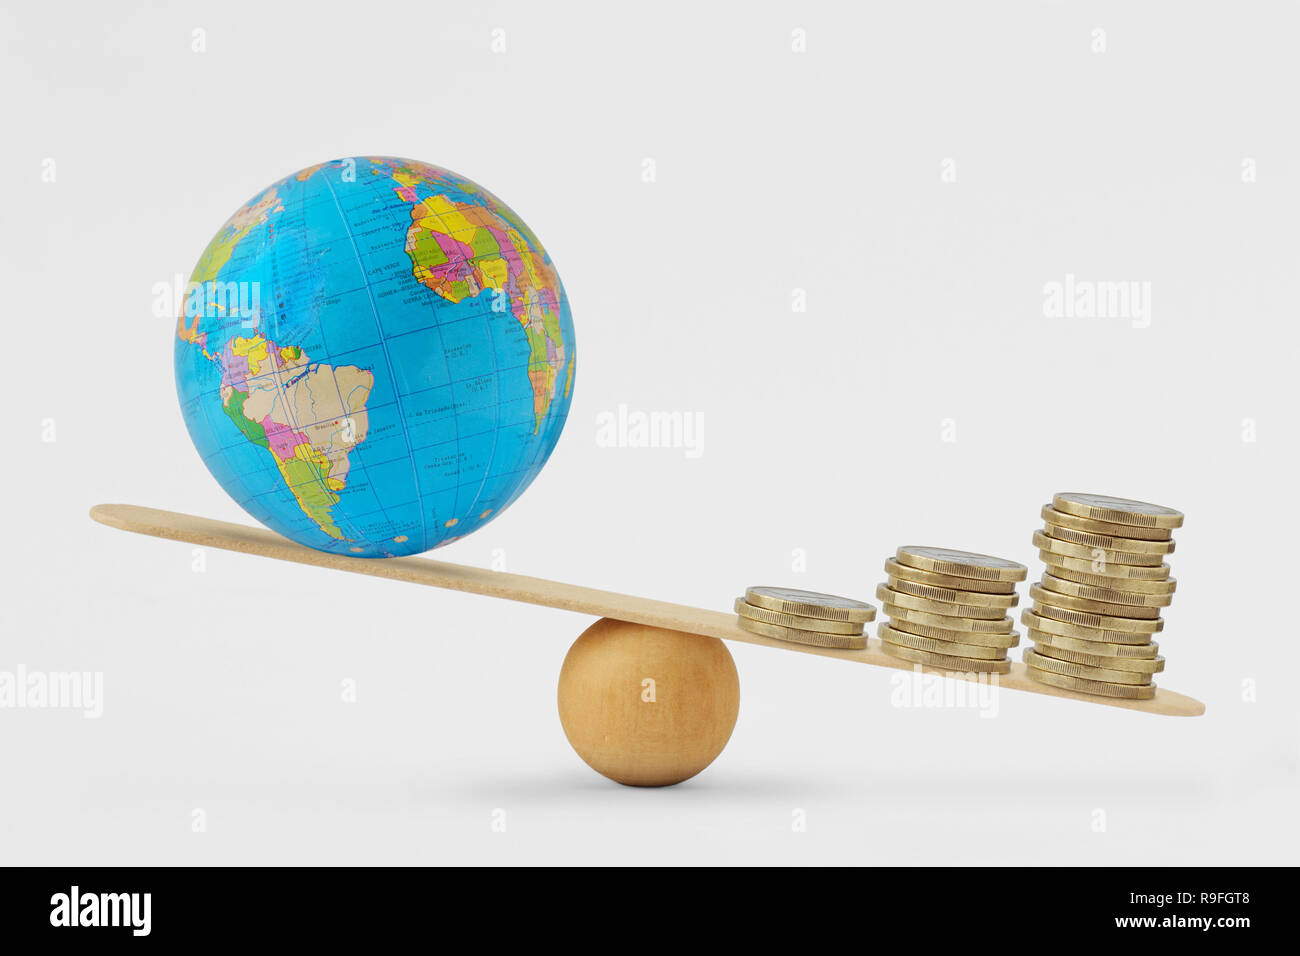 Globe terrestre et de l'échelle d'équilibre de la pile de pièces - Concept de la croissance économique la priorité sur la santé planétaire Banque D'Images